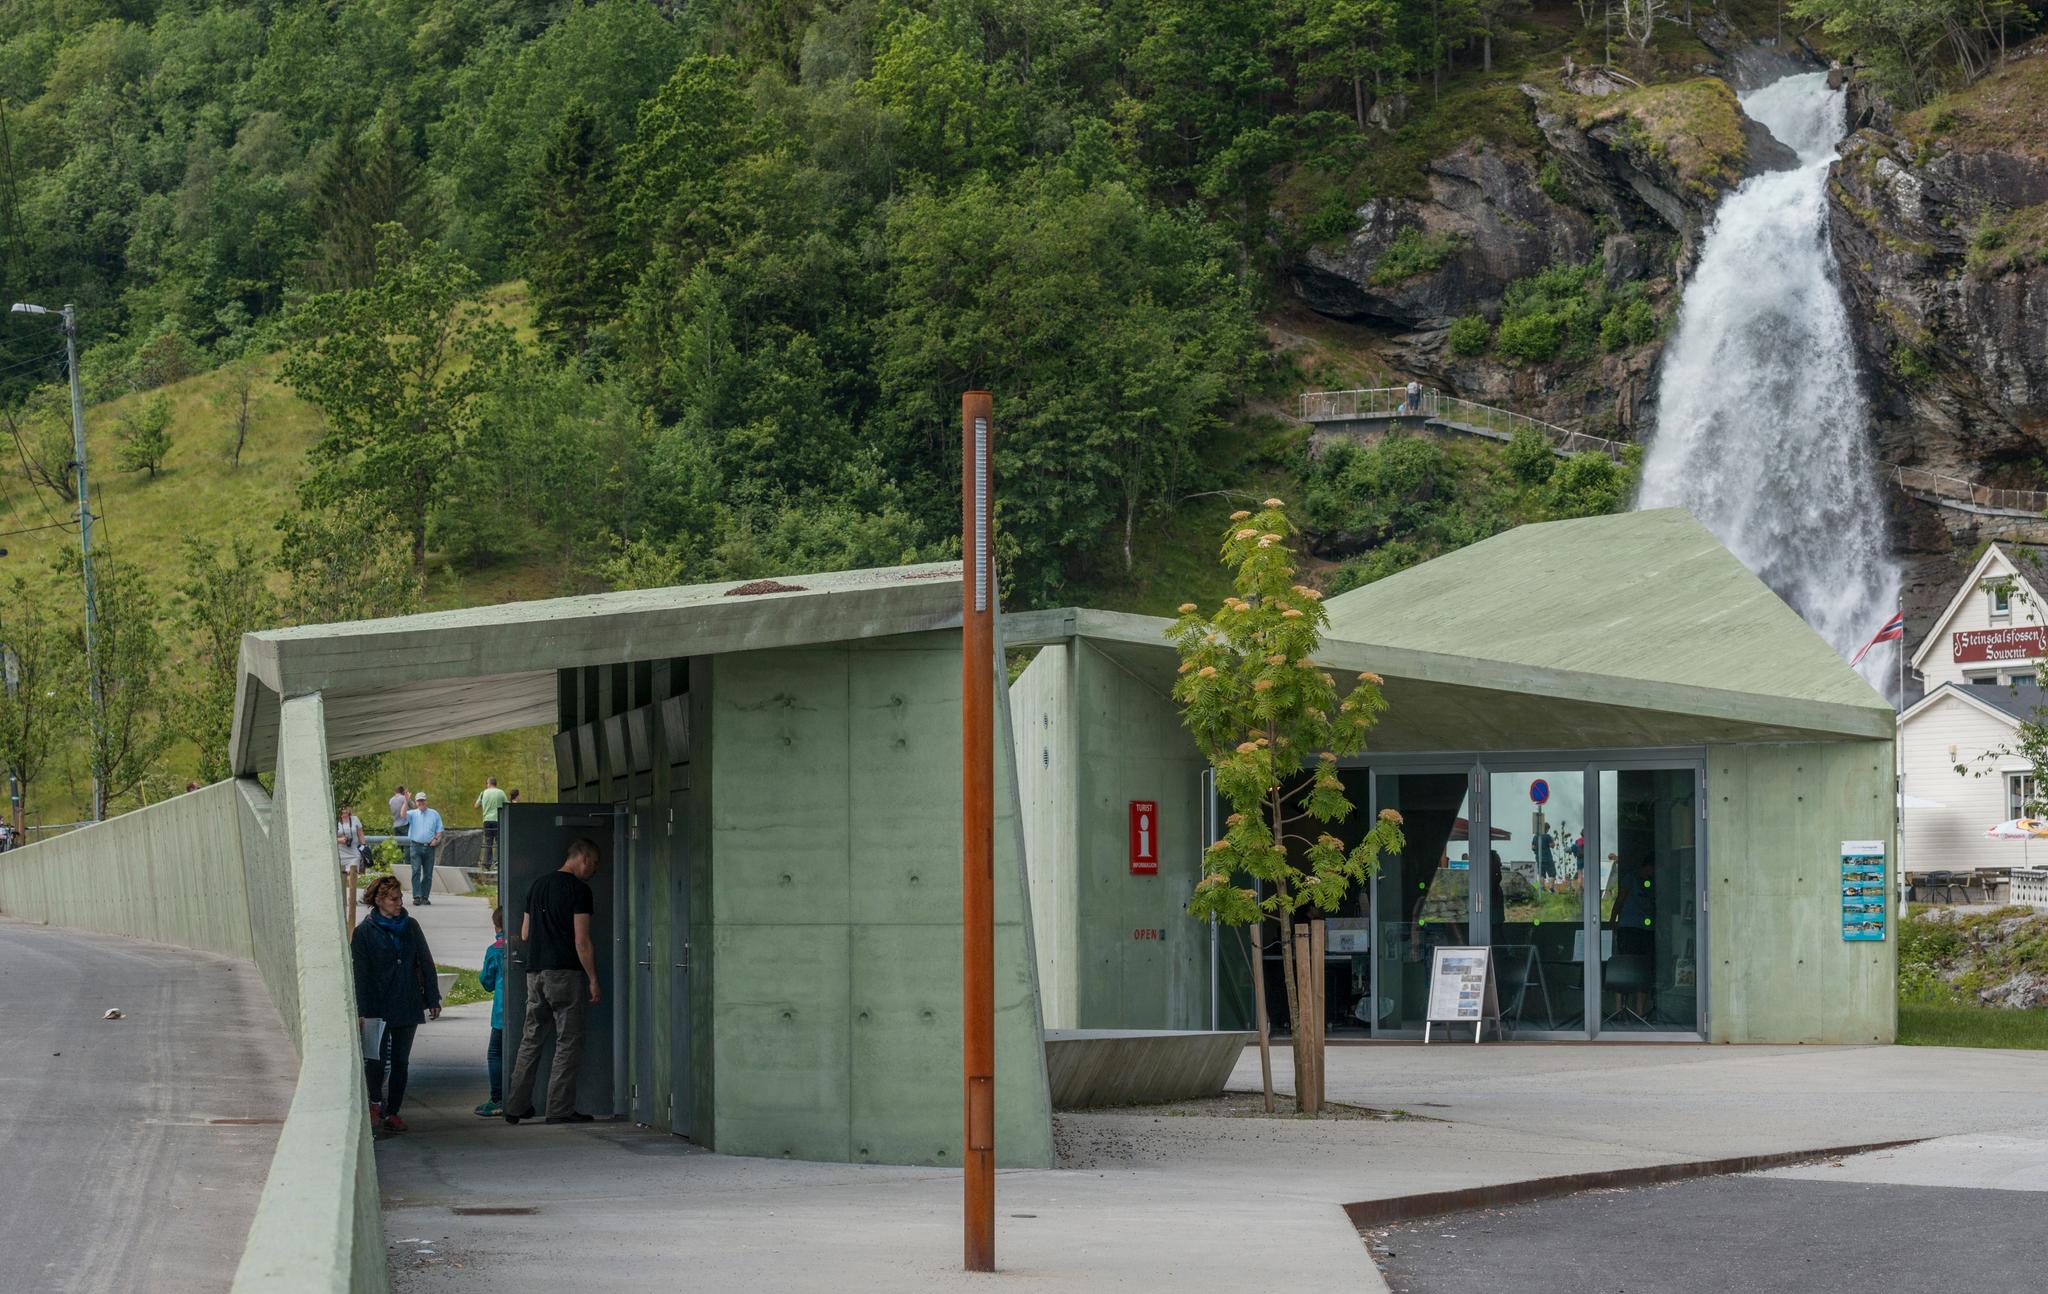 Steinsdalsfossen rasteplass i Hardanger. Her kan du gå bak selve fossefallet uten å bli våt. Arkitekt: Jarmund/Vigsnæs AS. Landskapsarkitekt: Grindaker AS.